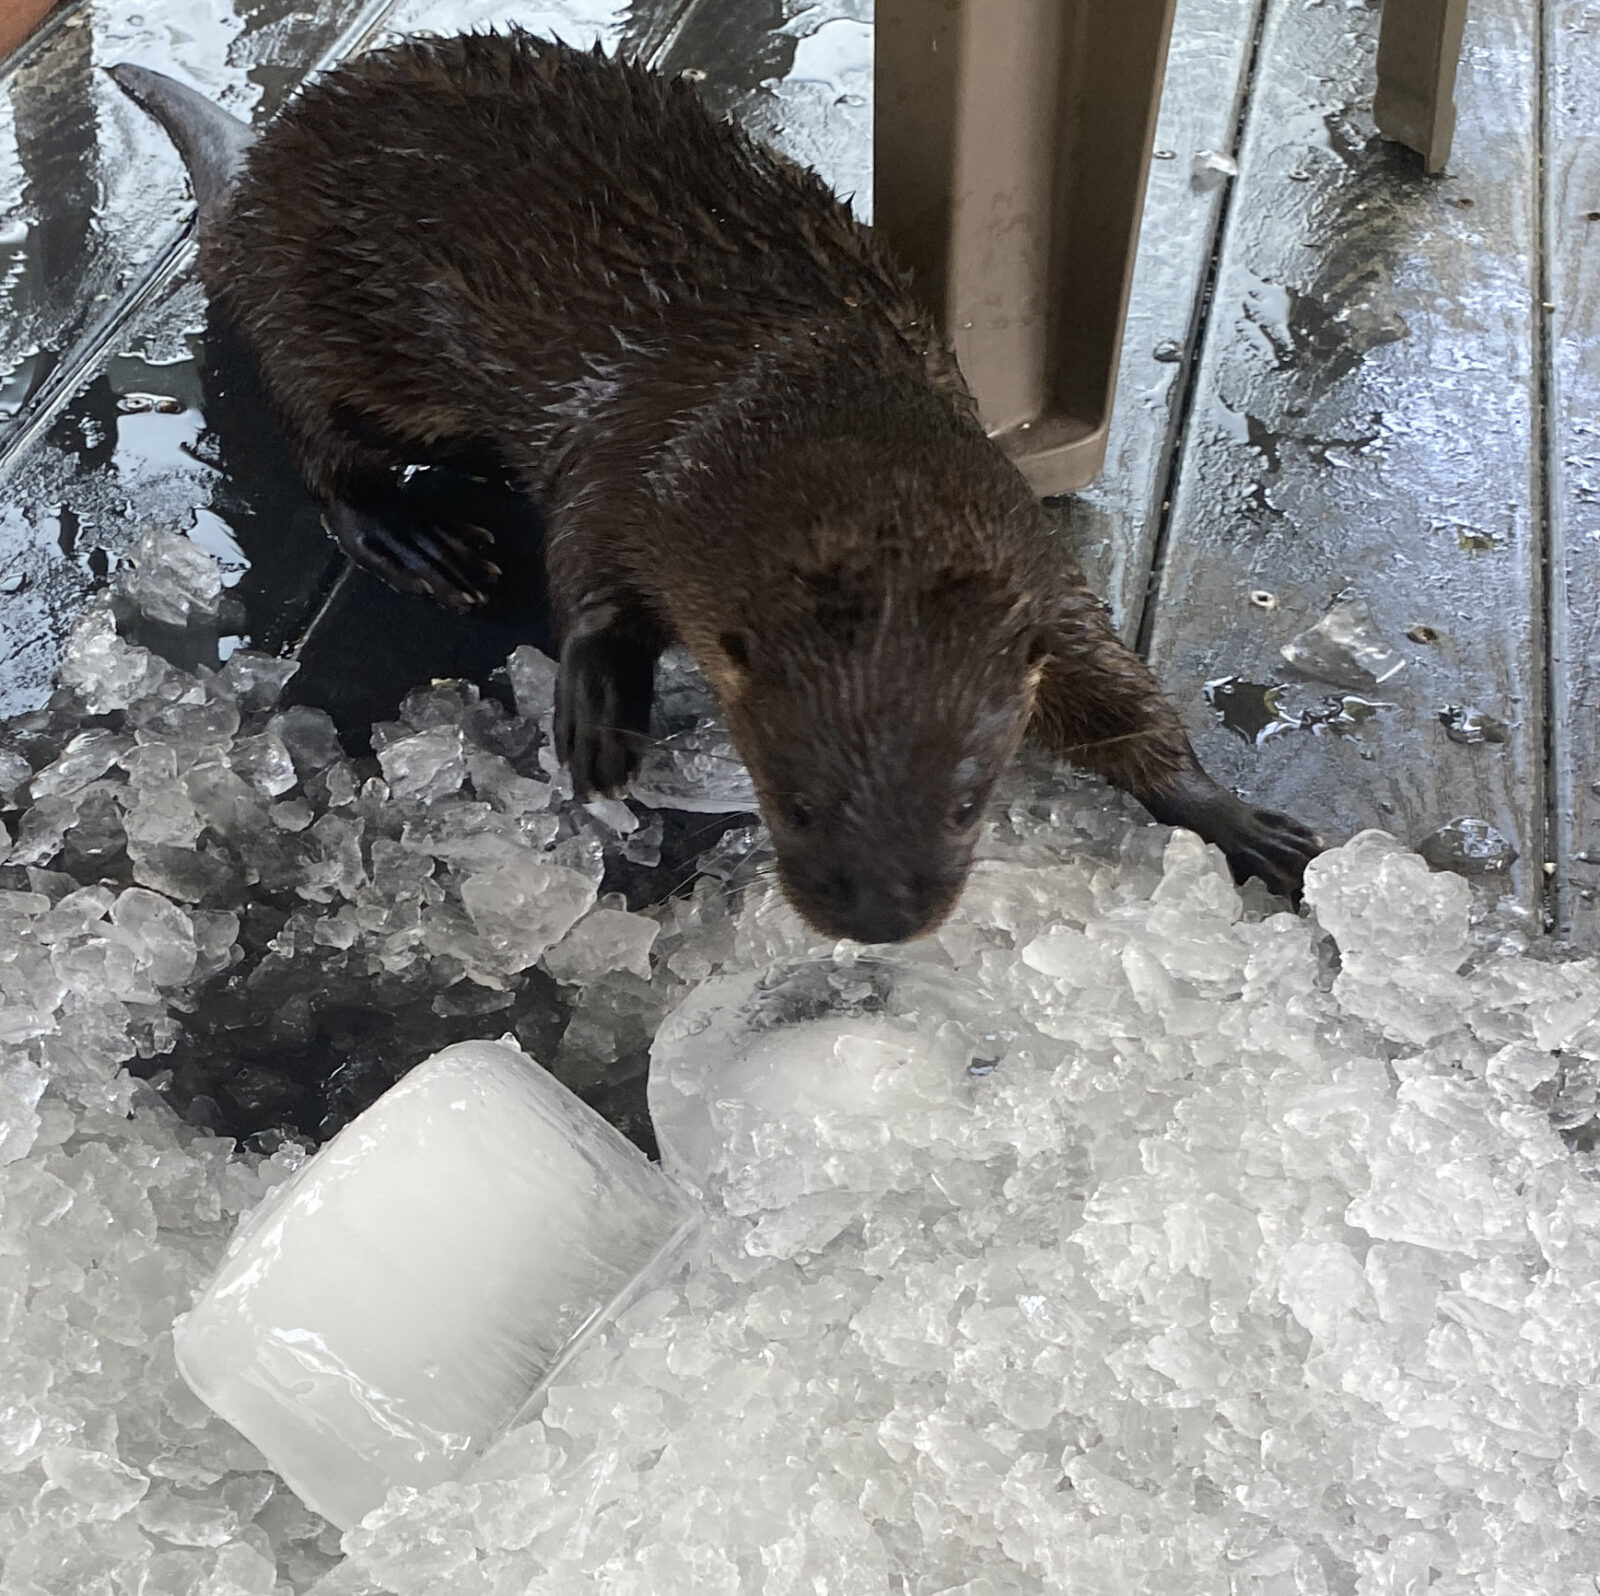 Pat's Wildways: Otter Ice Capades